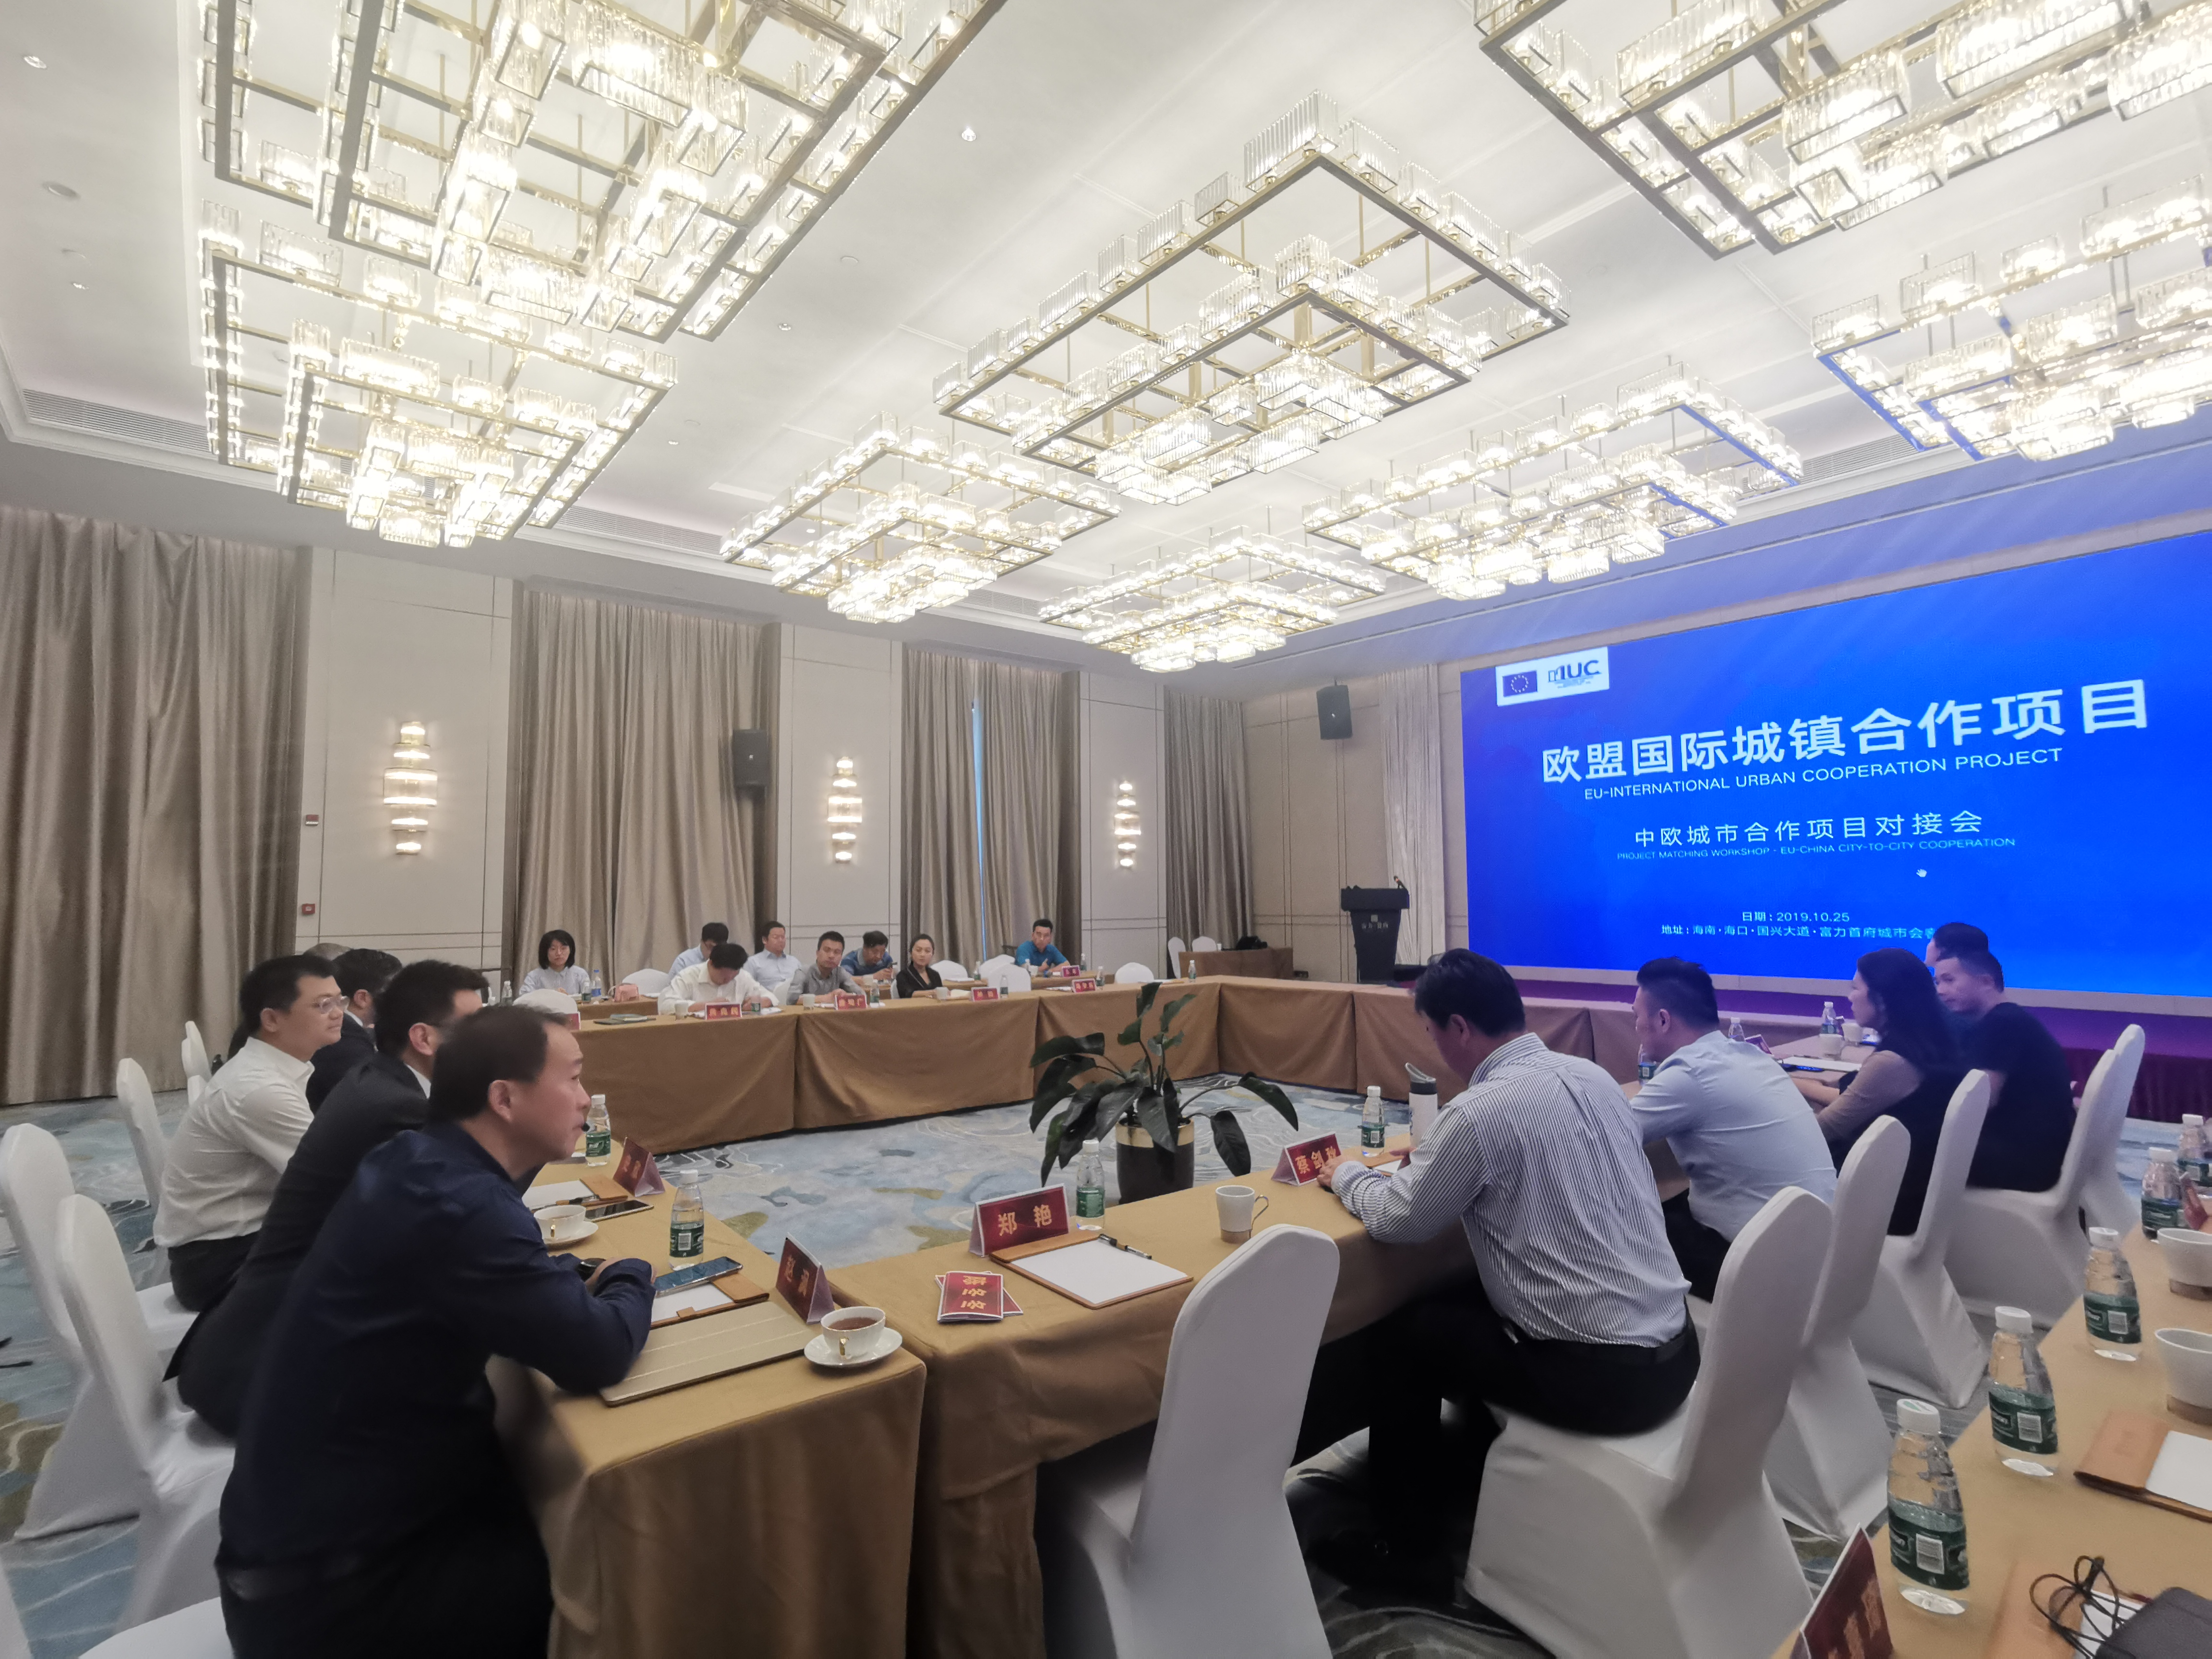 Building EU-China circular economy cooperation in Hainan, China